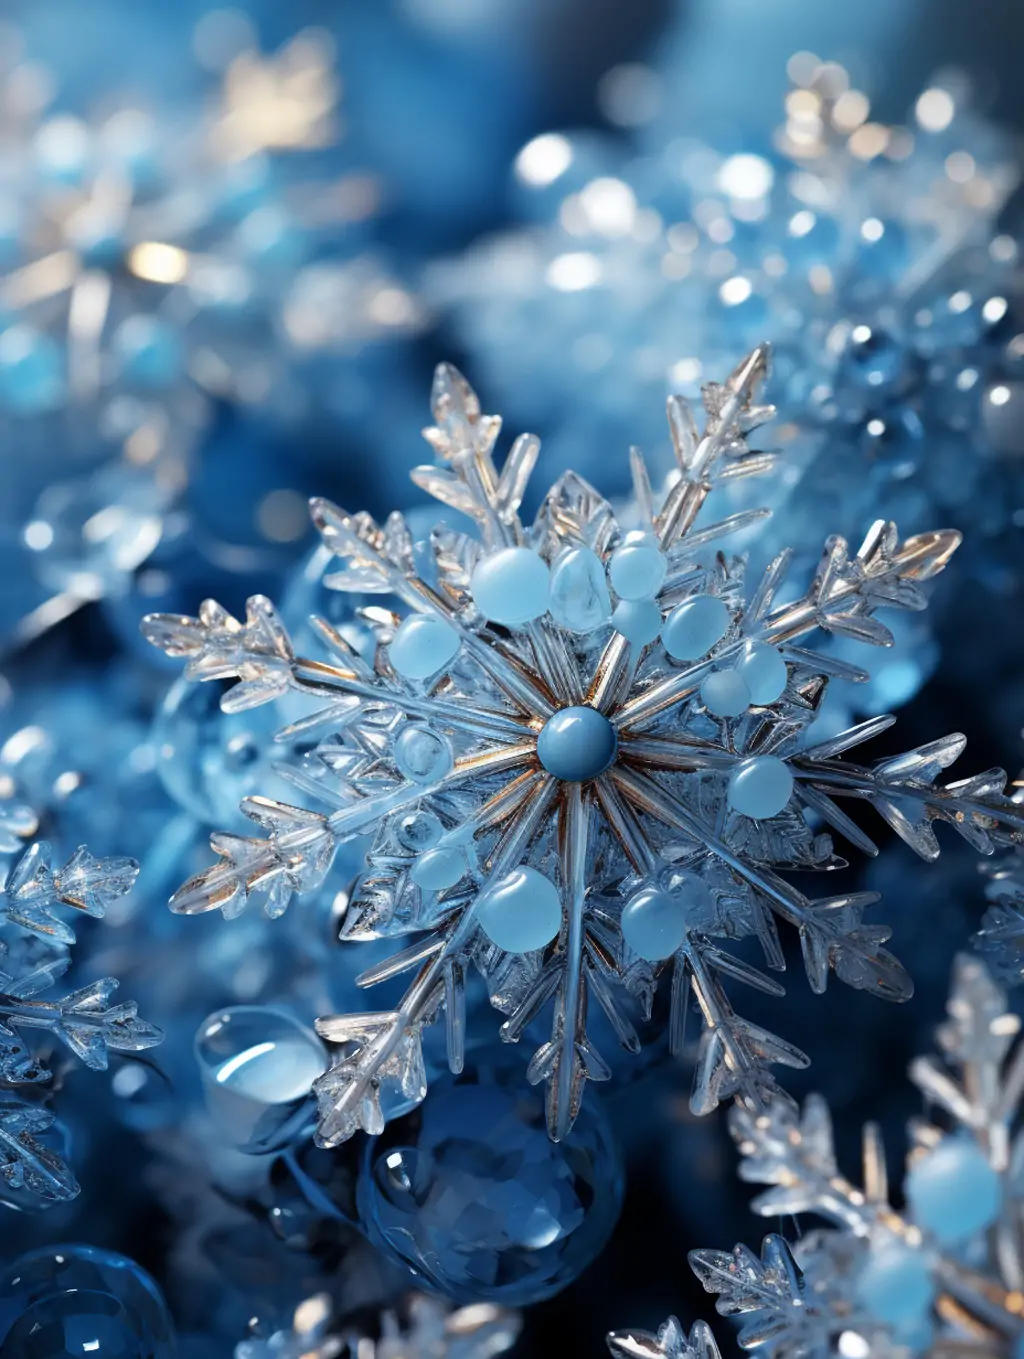 创意冬天蓝色透明晶莹剔透立体雪花模型装饰产品摄影海报midjourney关键词咒语 - Ai宇宙吧--Ai宇宙吧-